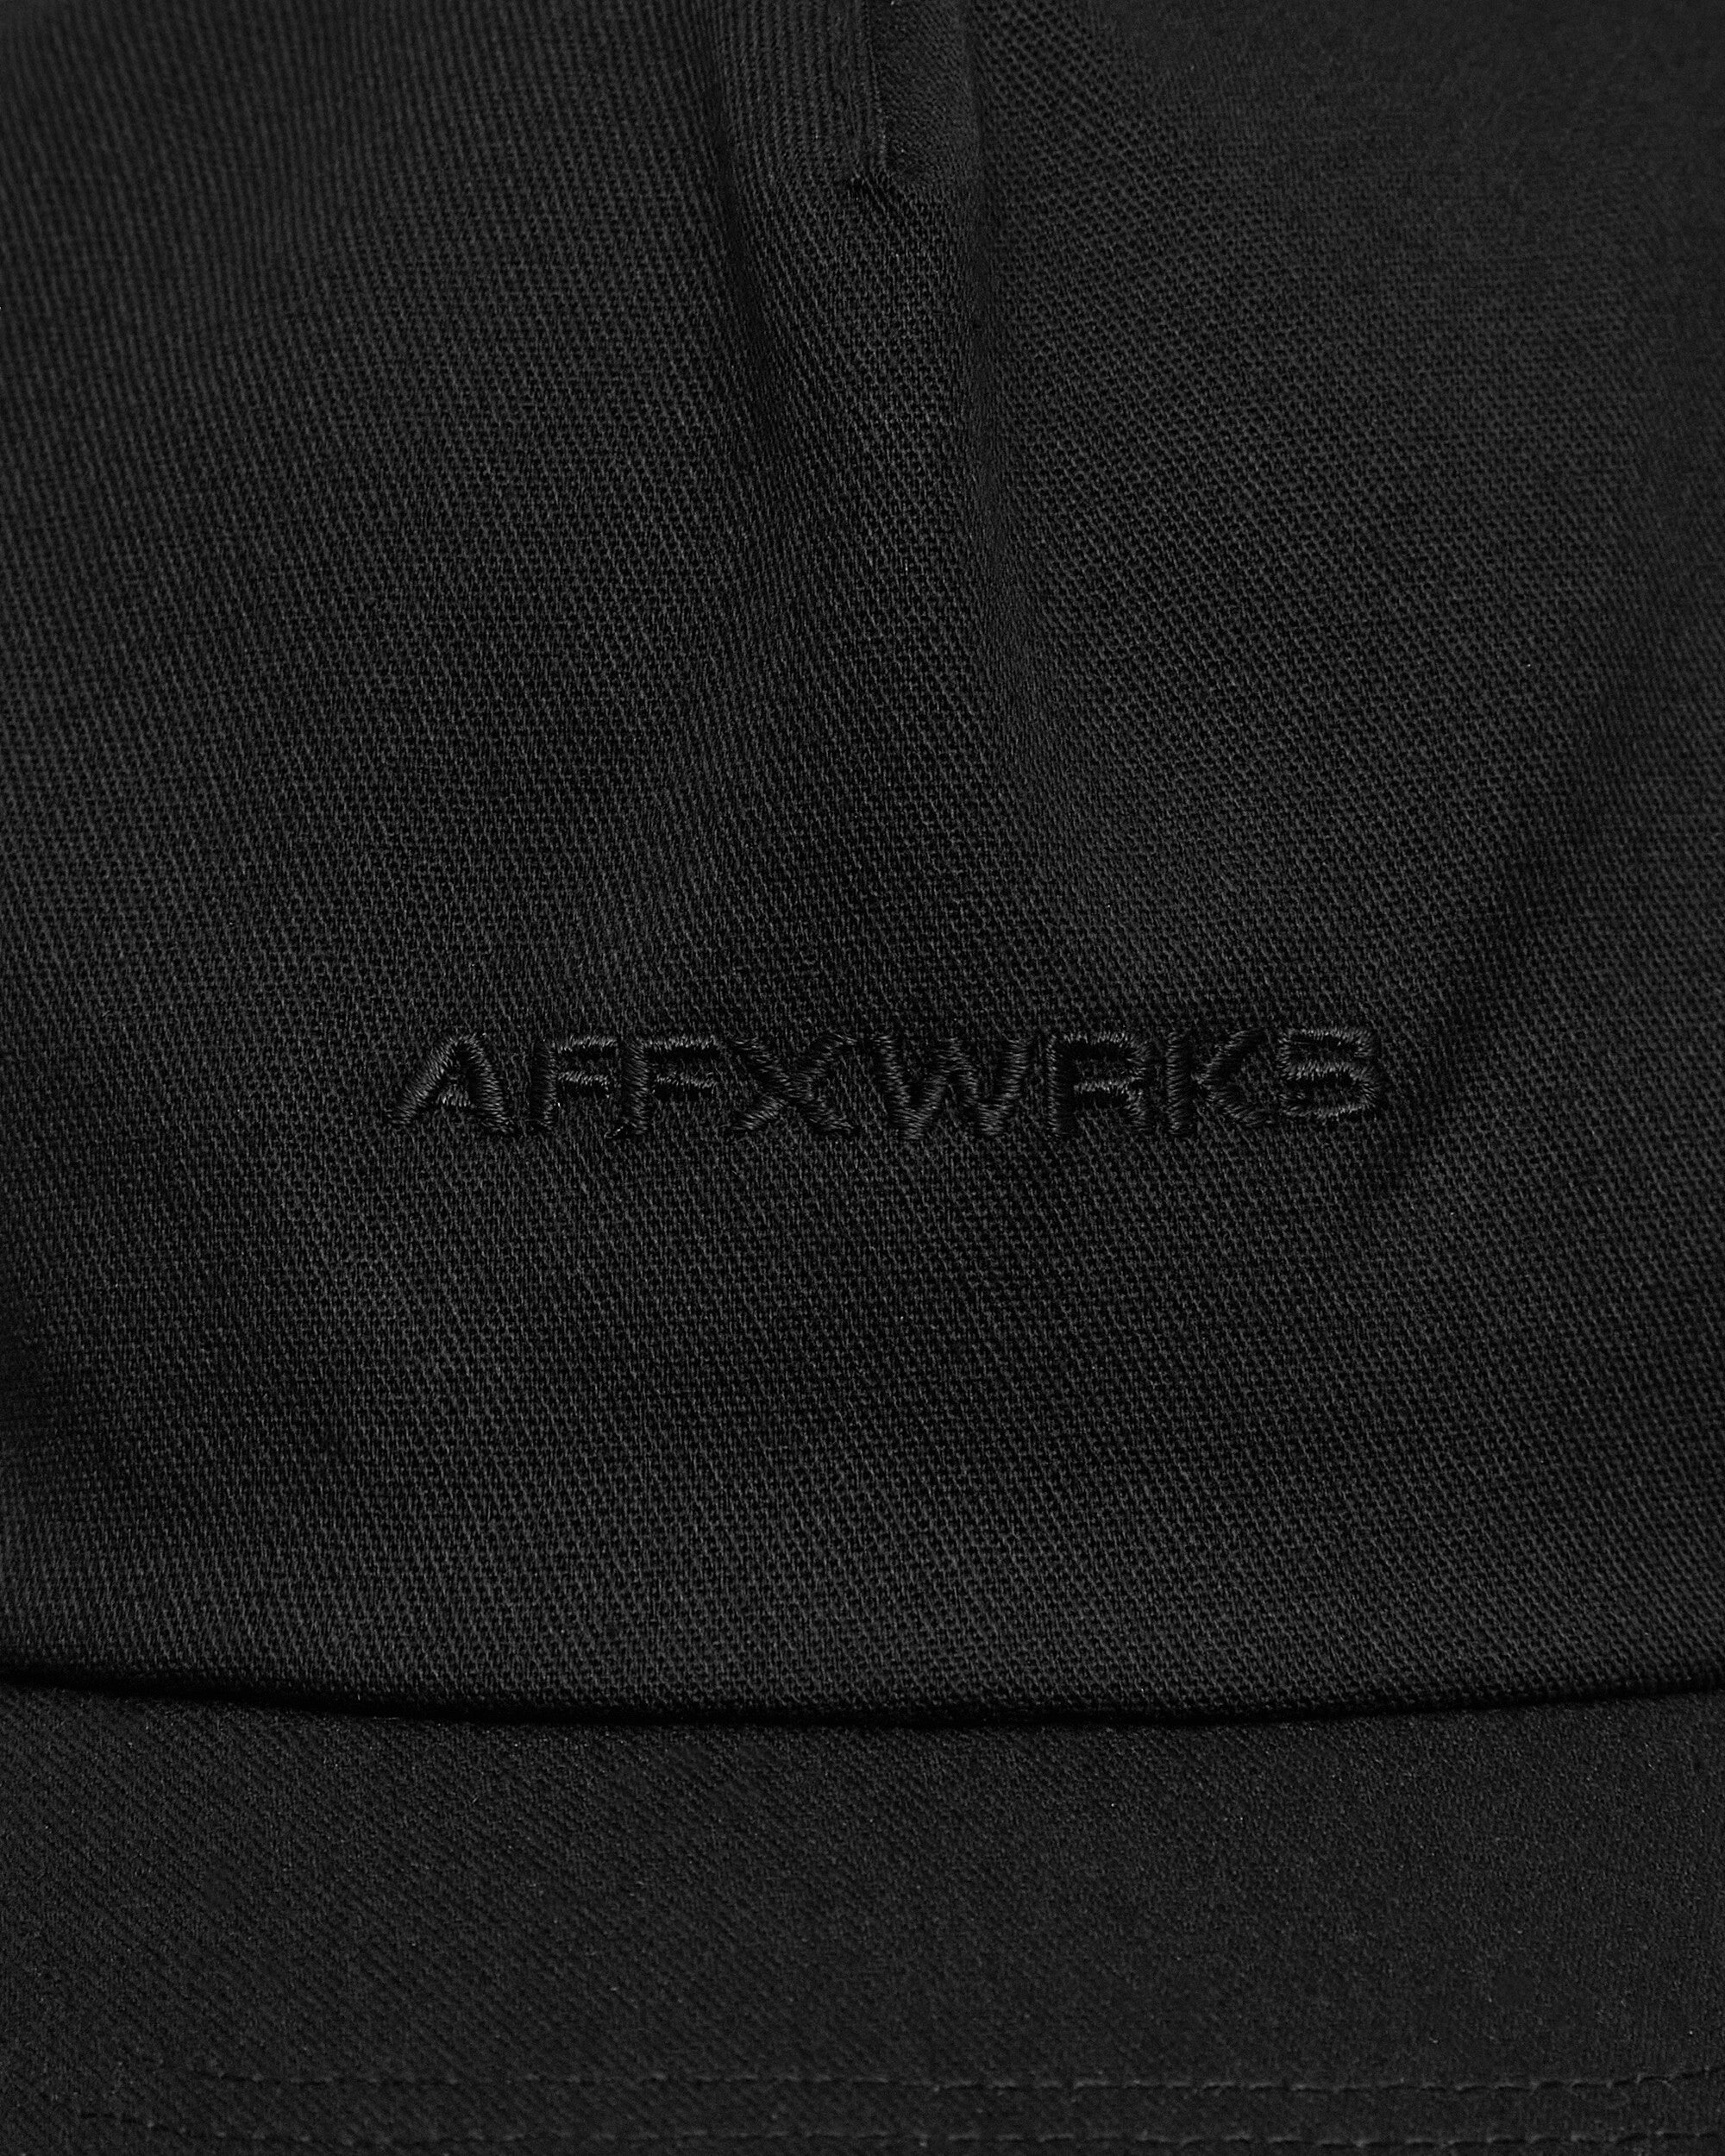 AFFXWRKS Trucker Cap Black Hats Caps SS24AC04 BLACK